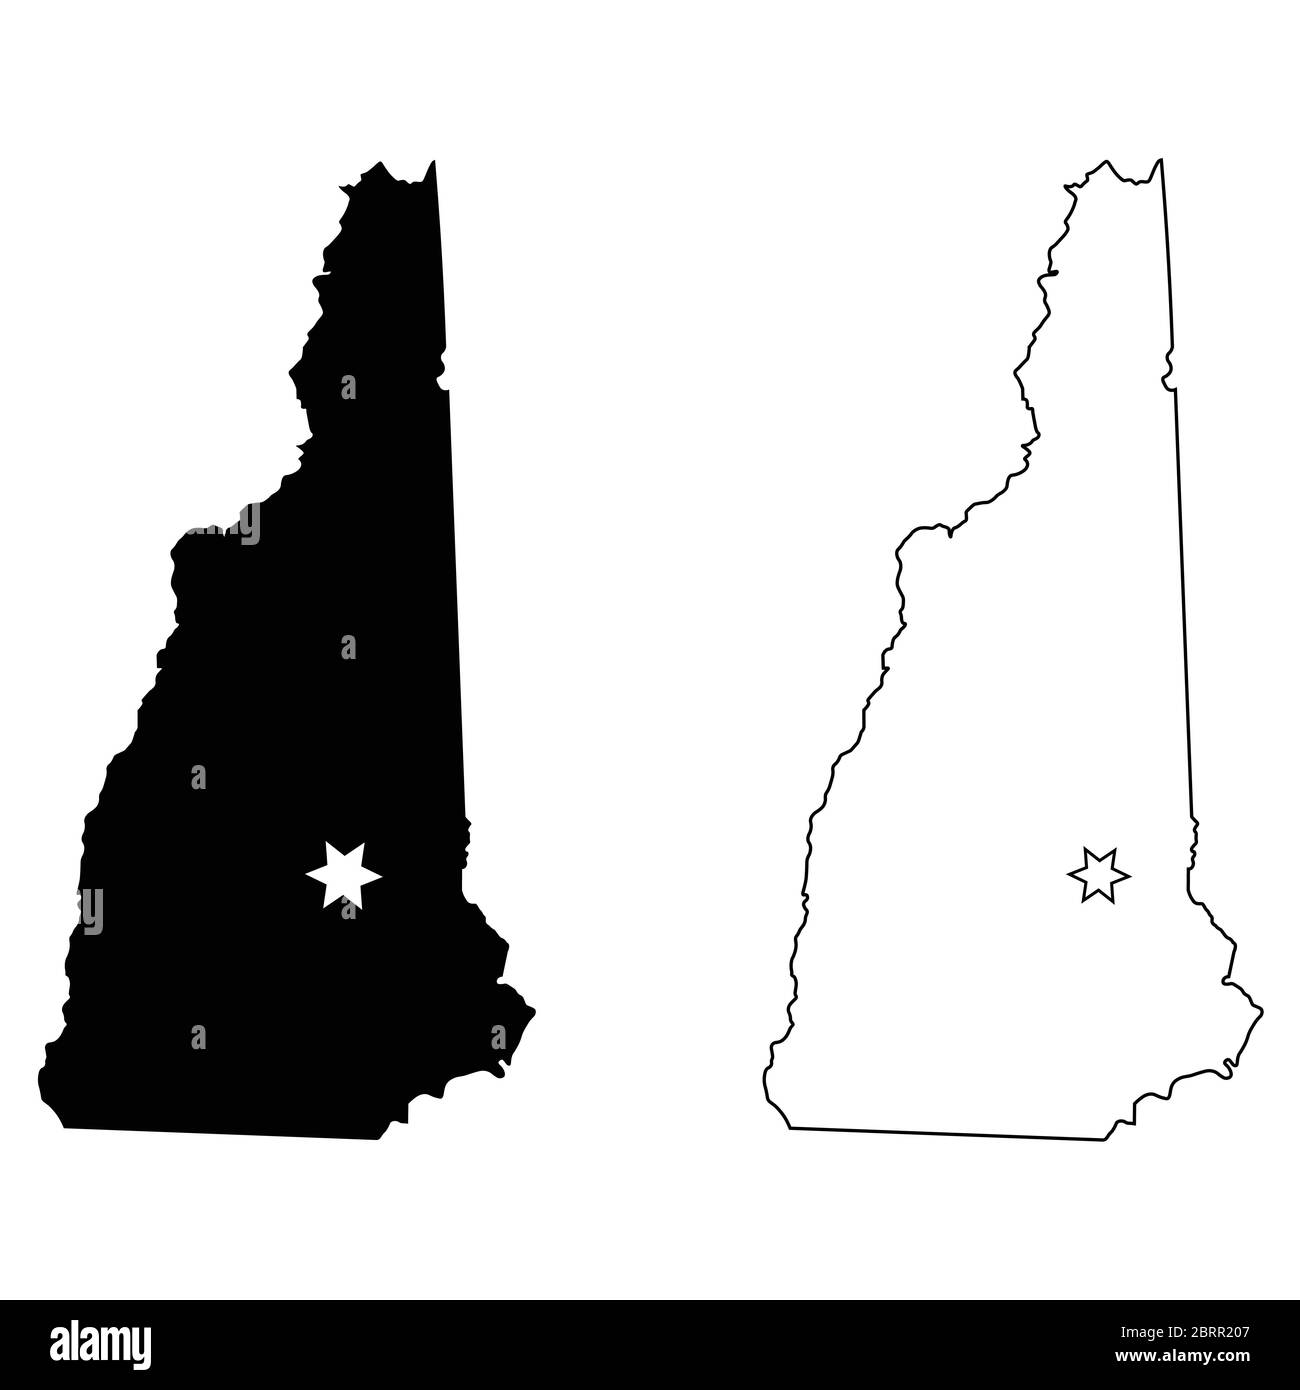 New Hampshire NH State Map USA mit Capital City Star bei Concord. Schwarze Silhouette und Umriss isoliert auf weißem Hintergrund. EPS-Vektor Stock Vektor